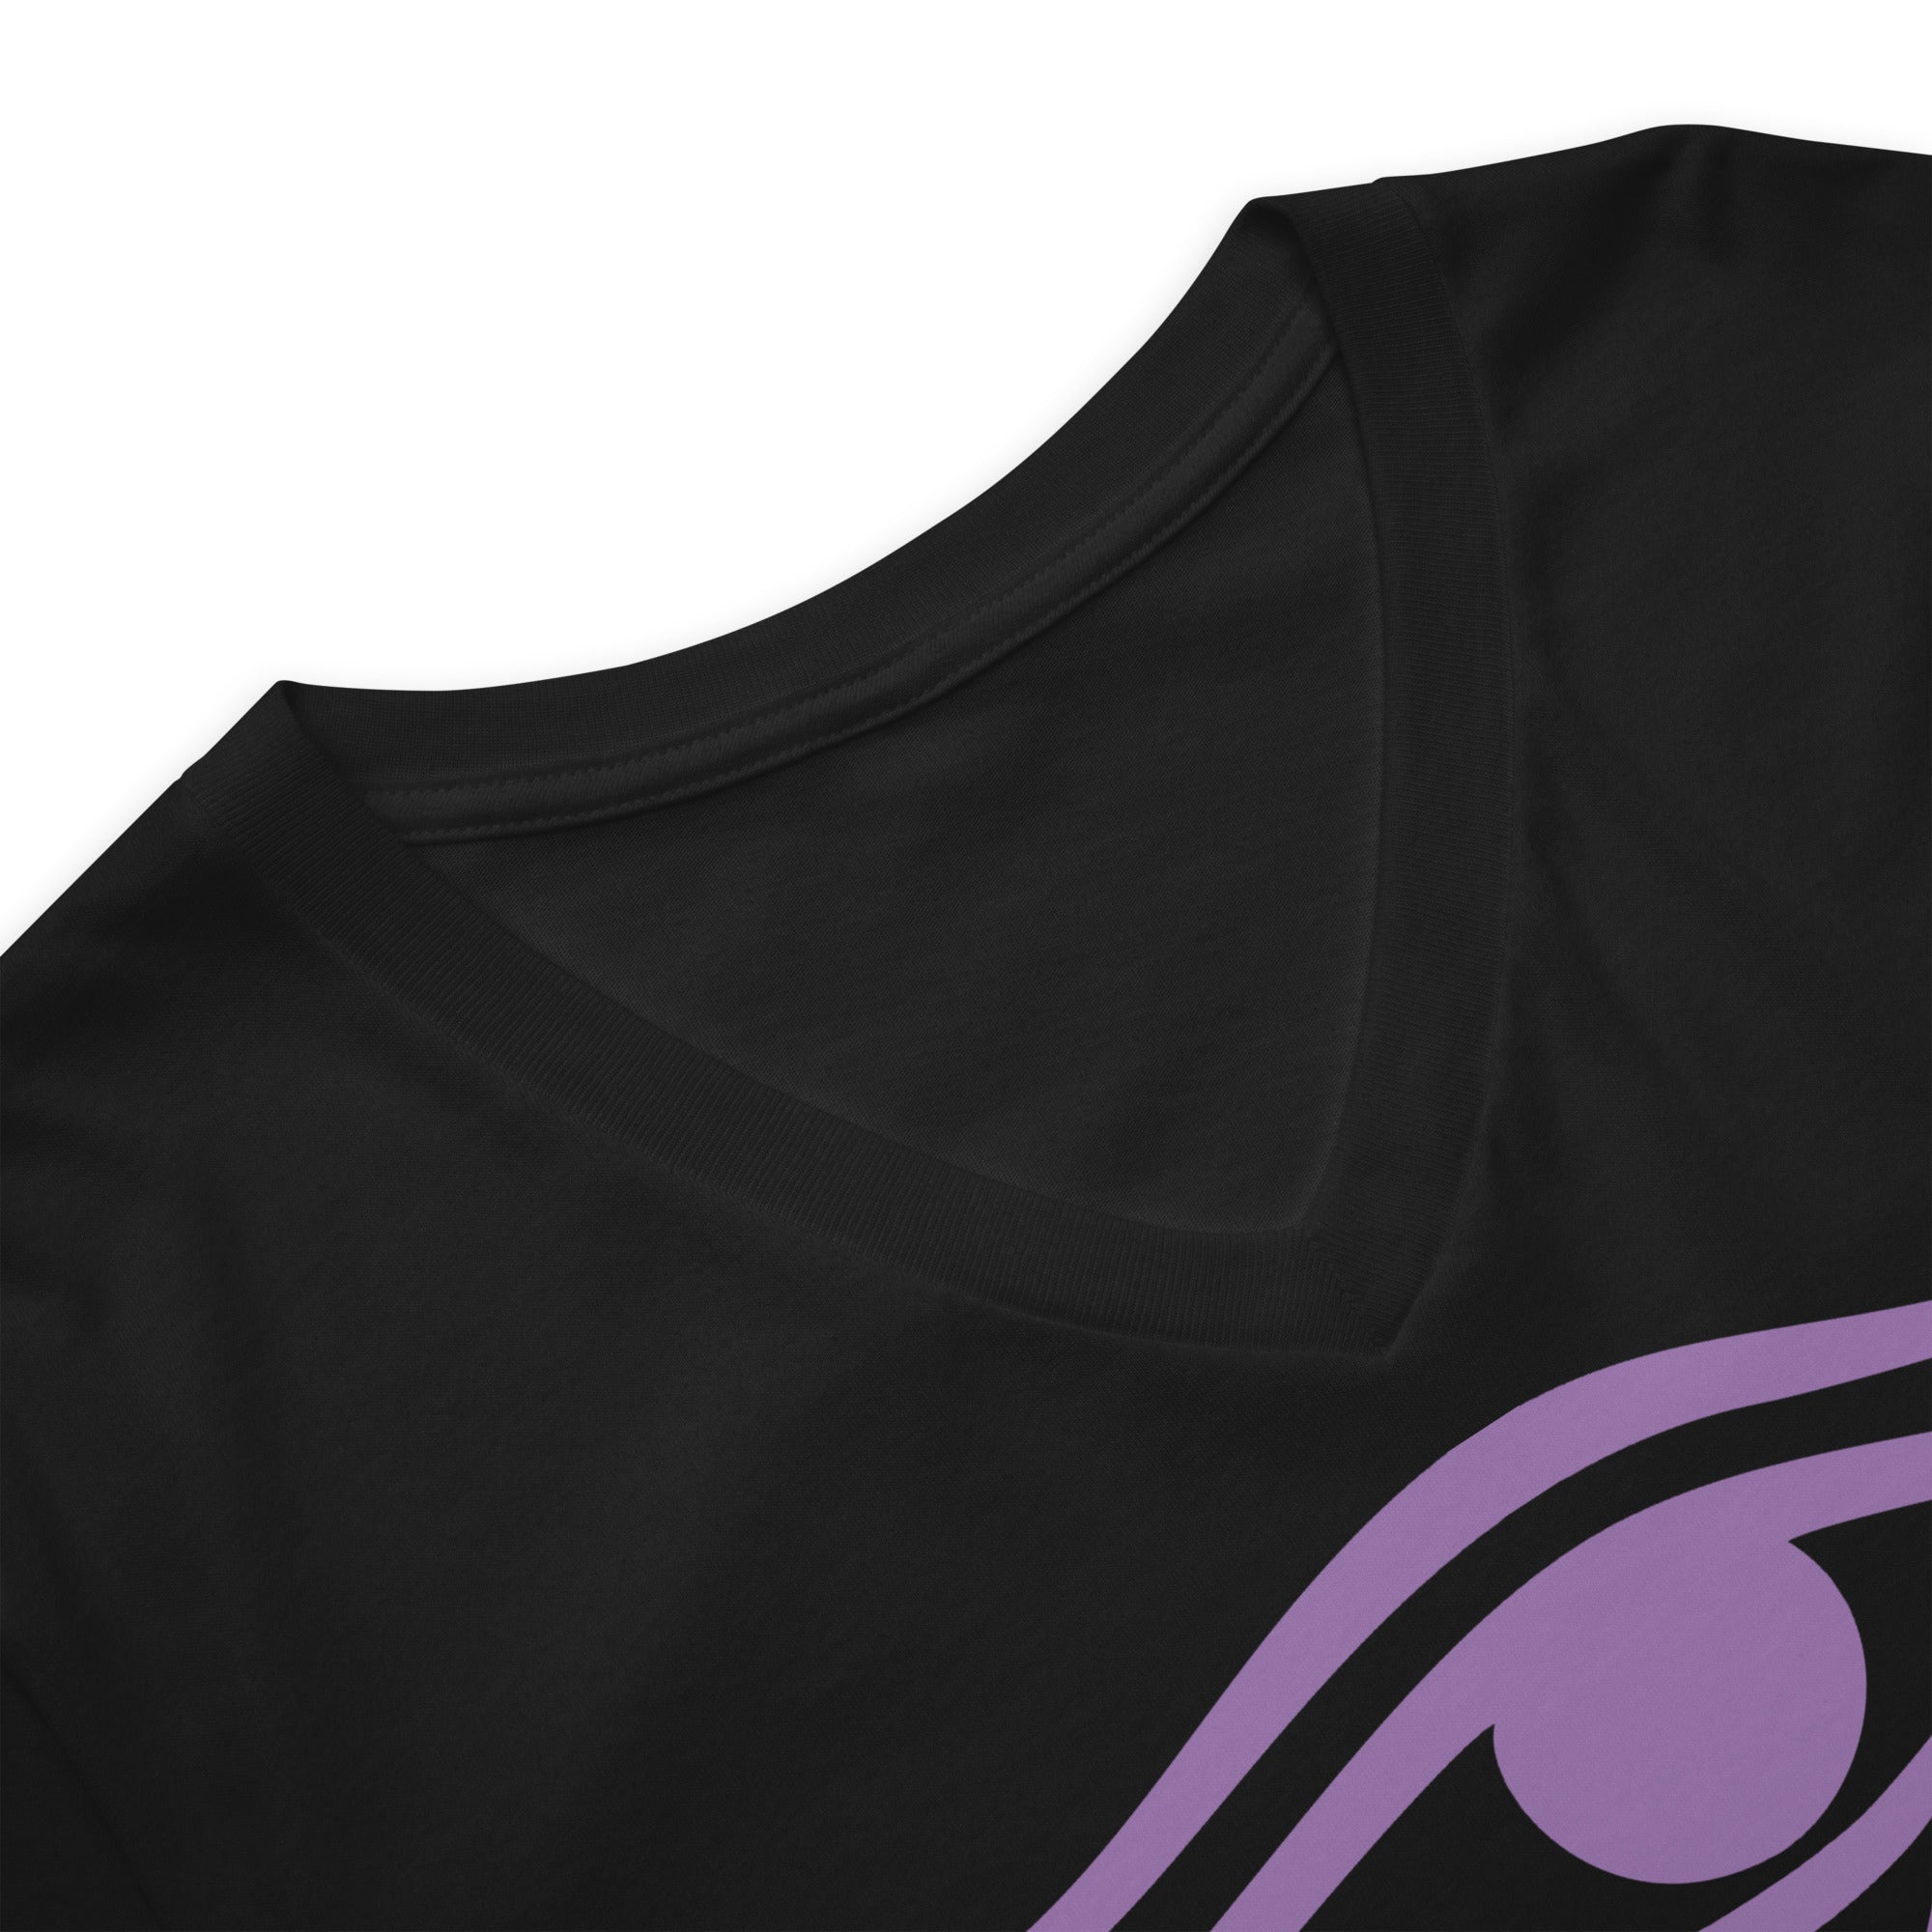 Eye of Ra Egyptian Goddess Women’s Short Sleeve V-Neck T-Shirt Purple Print - Edge of Life Designs